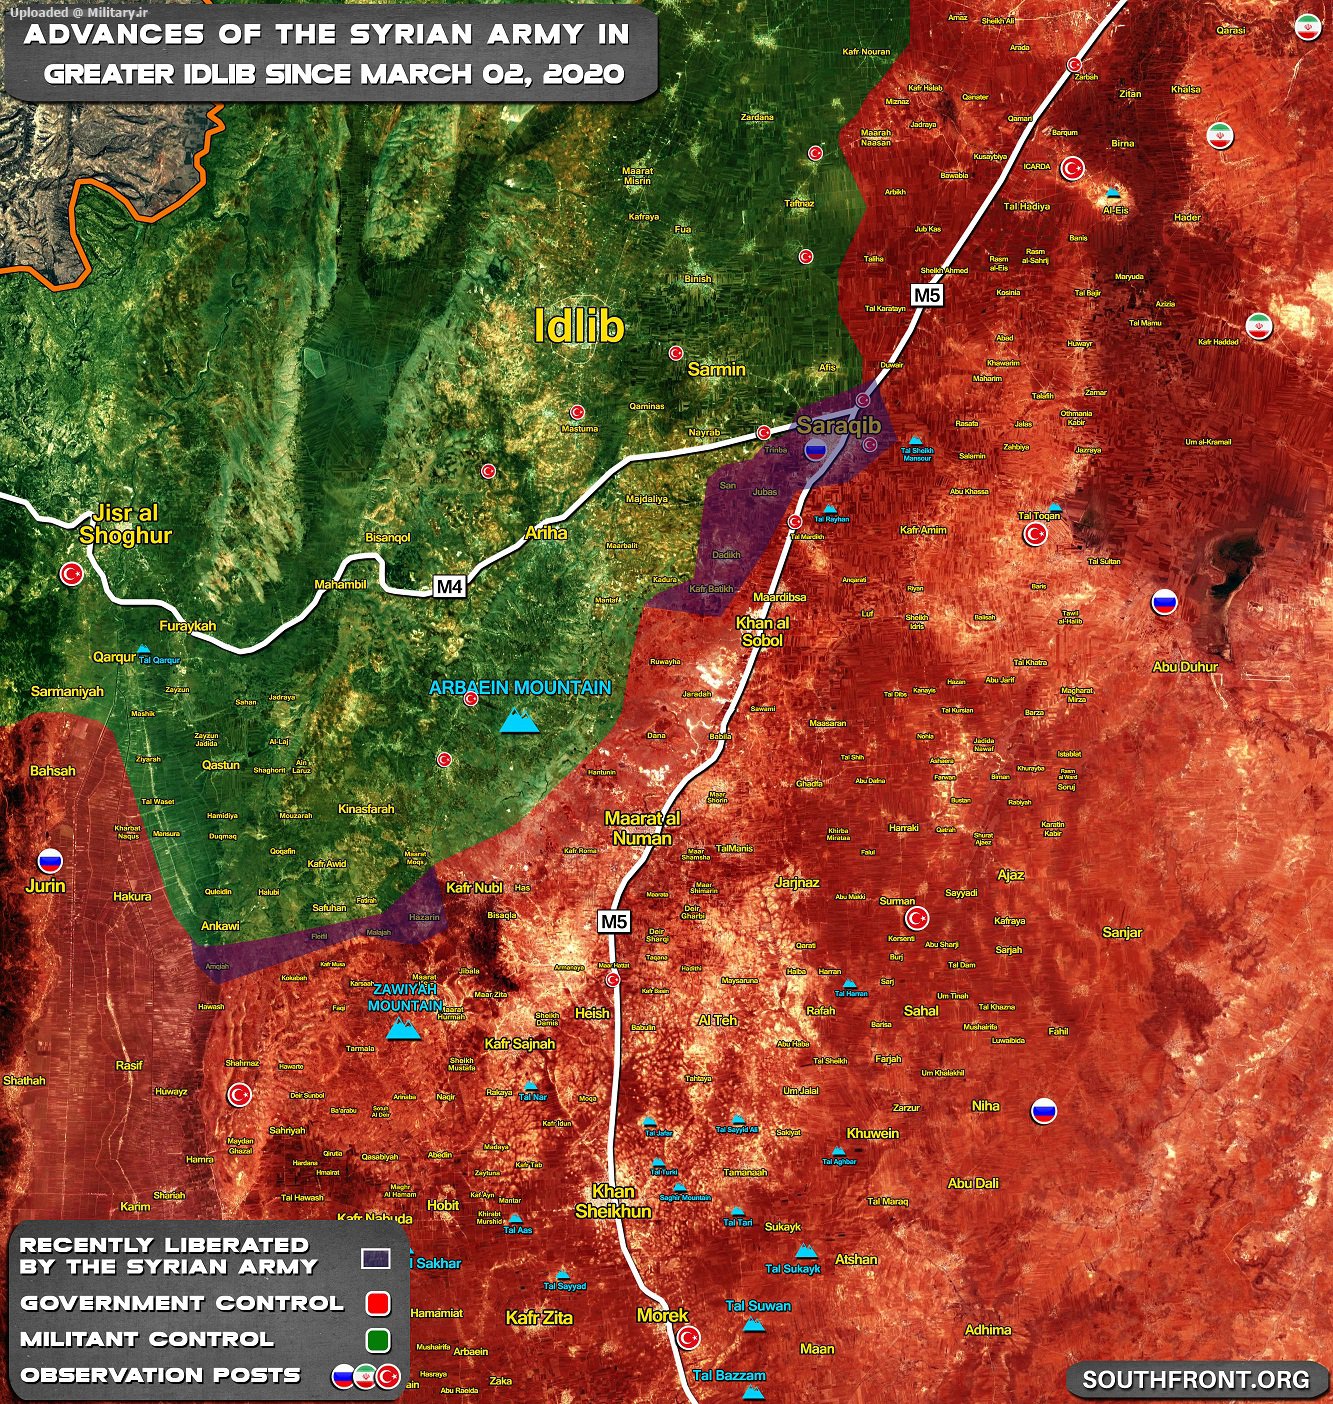 3march_Southern-Idlib-2_-_Copy.jpg